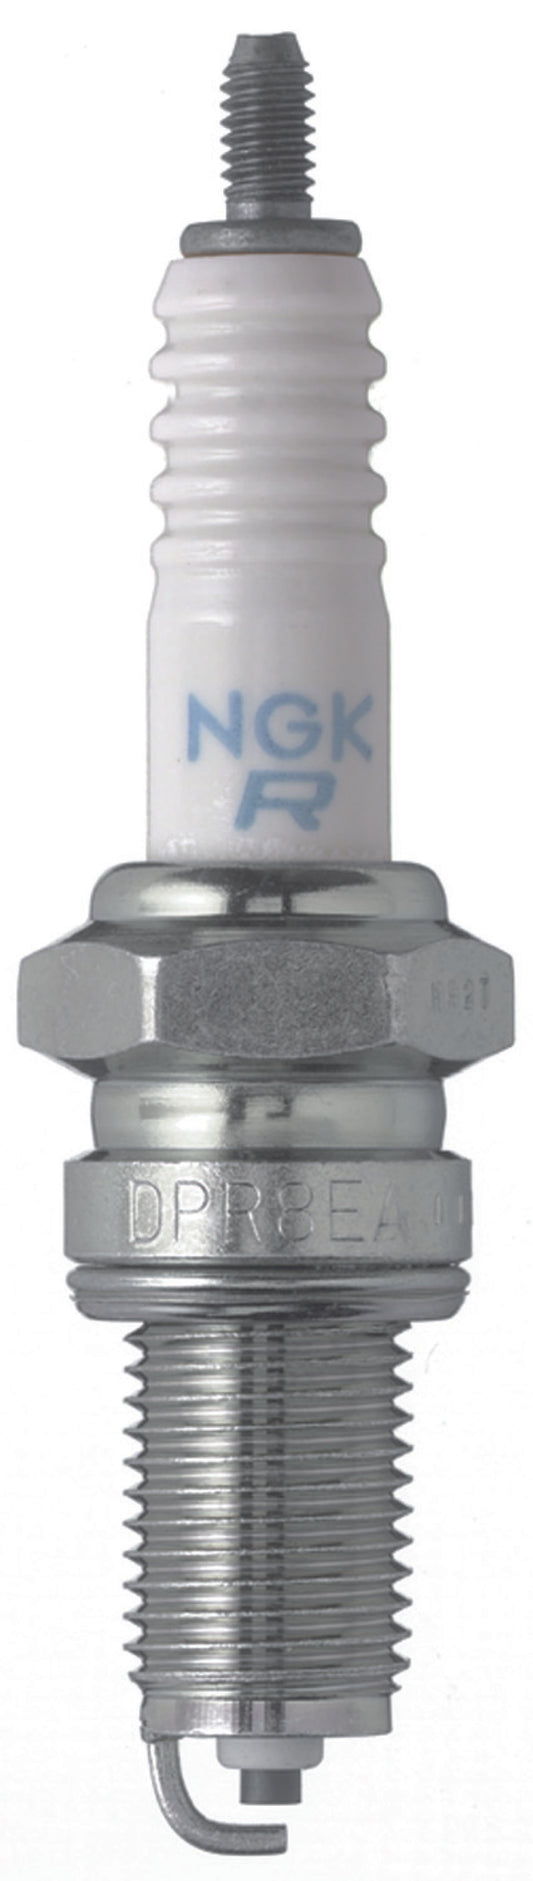 NGK Standard Spark Plug Box of 10 (DPR5EA-9)